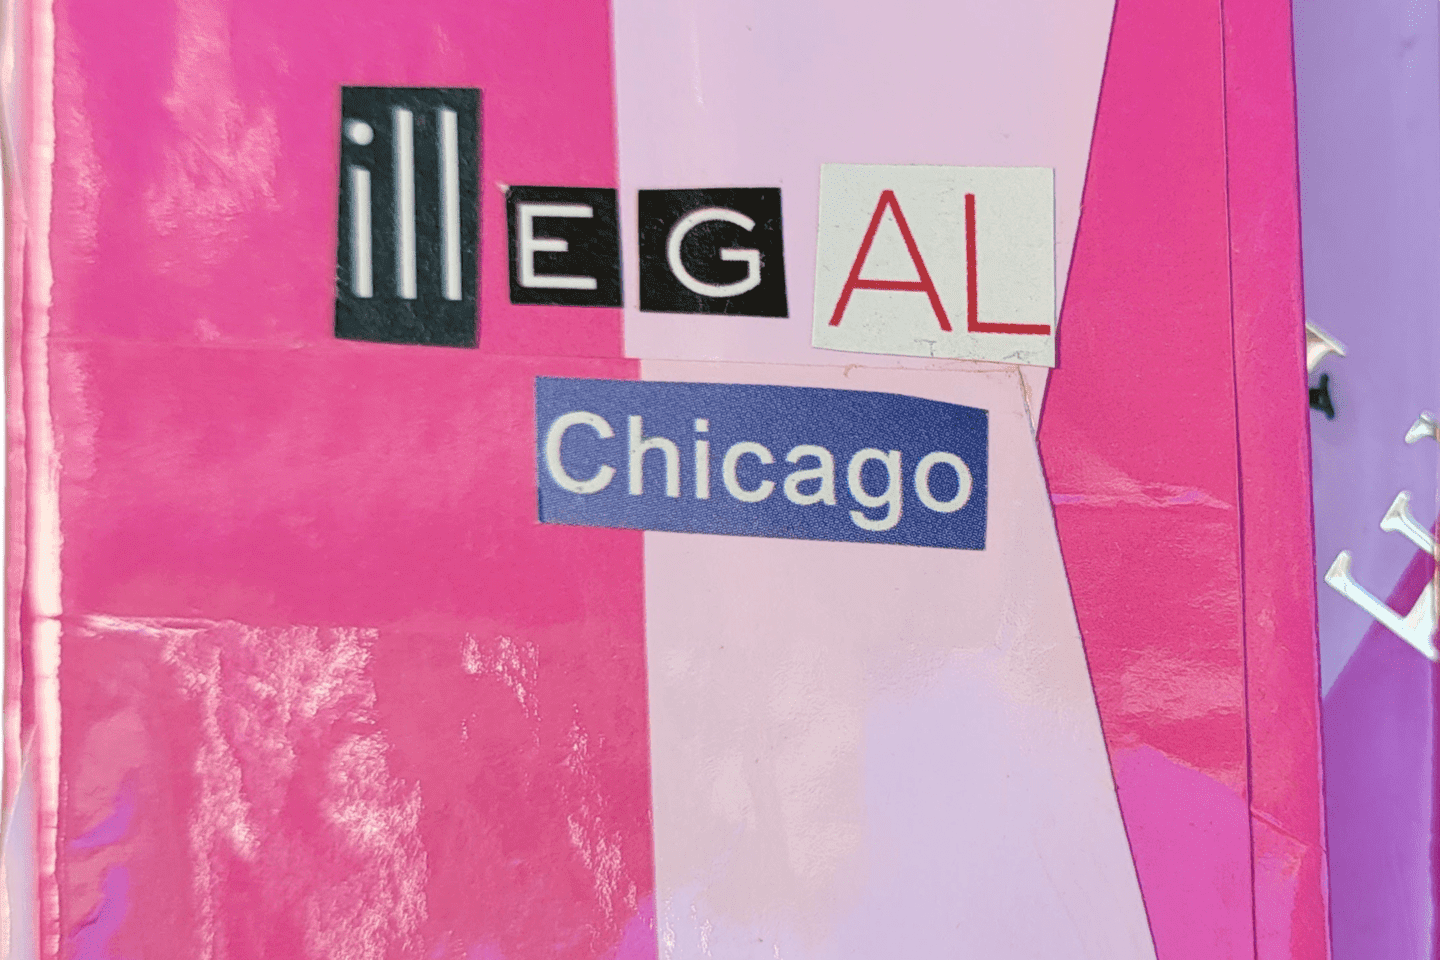 Illegal Chicago